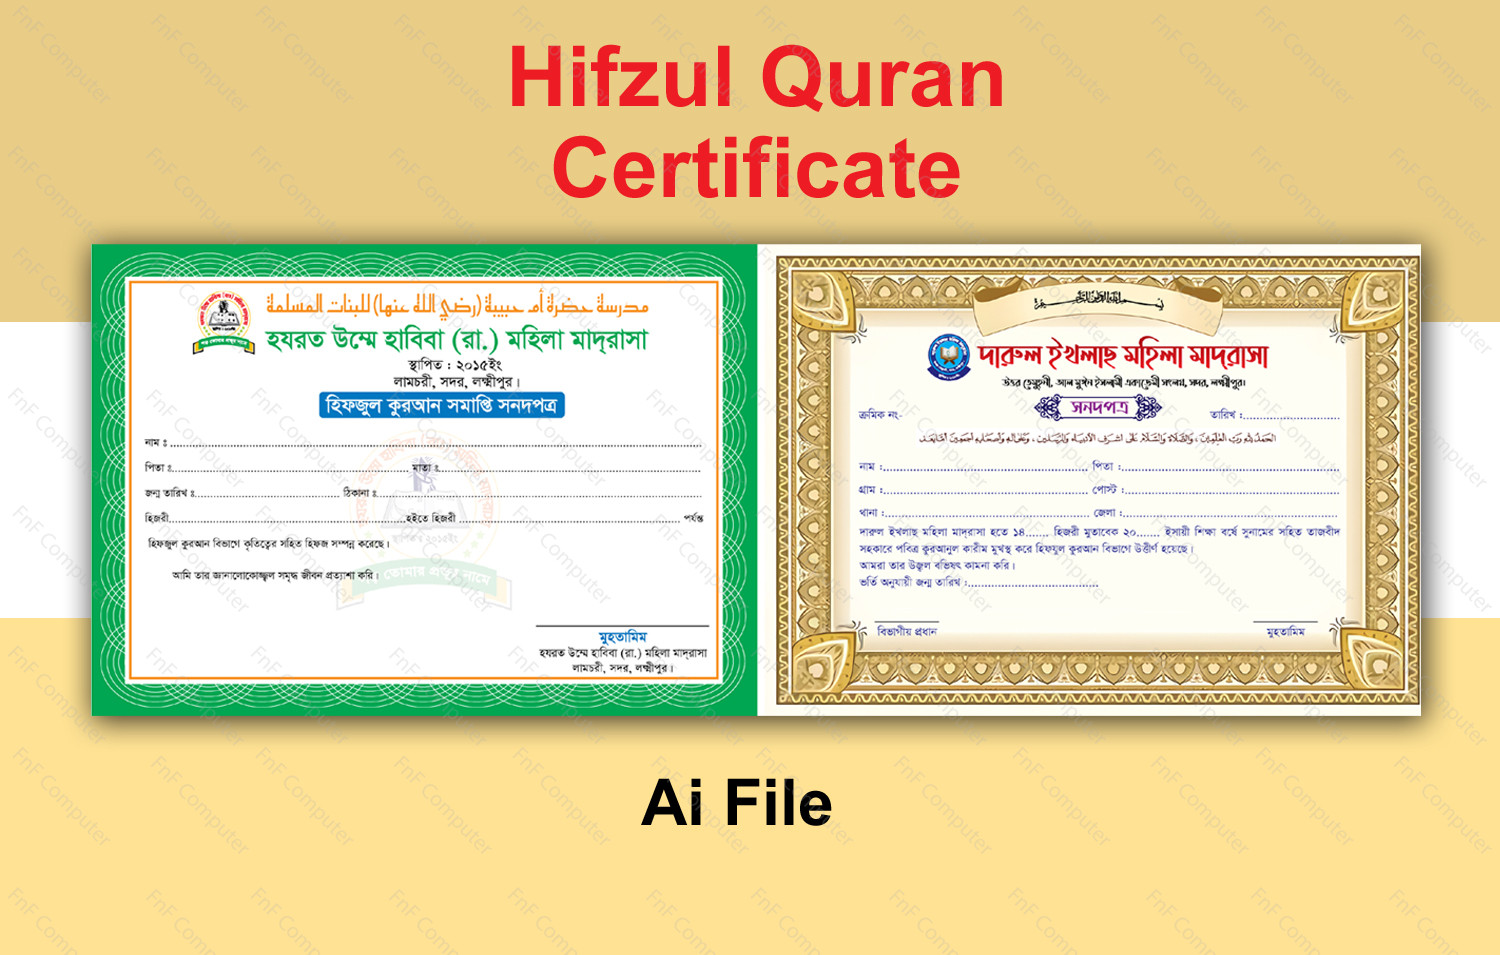 Hifzul quran certificate